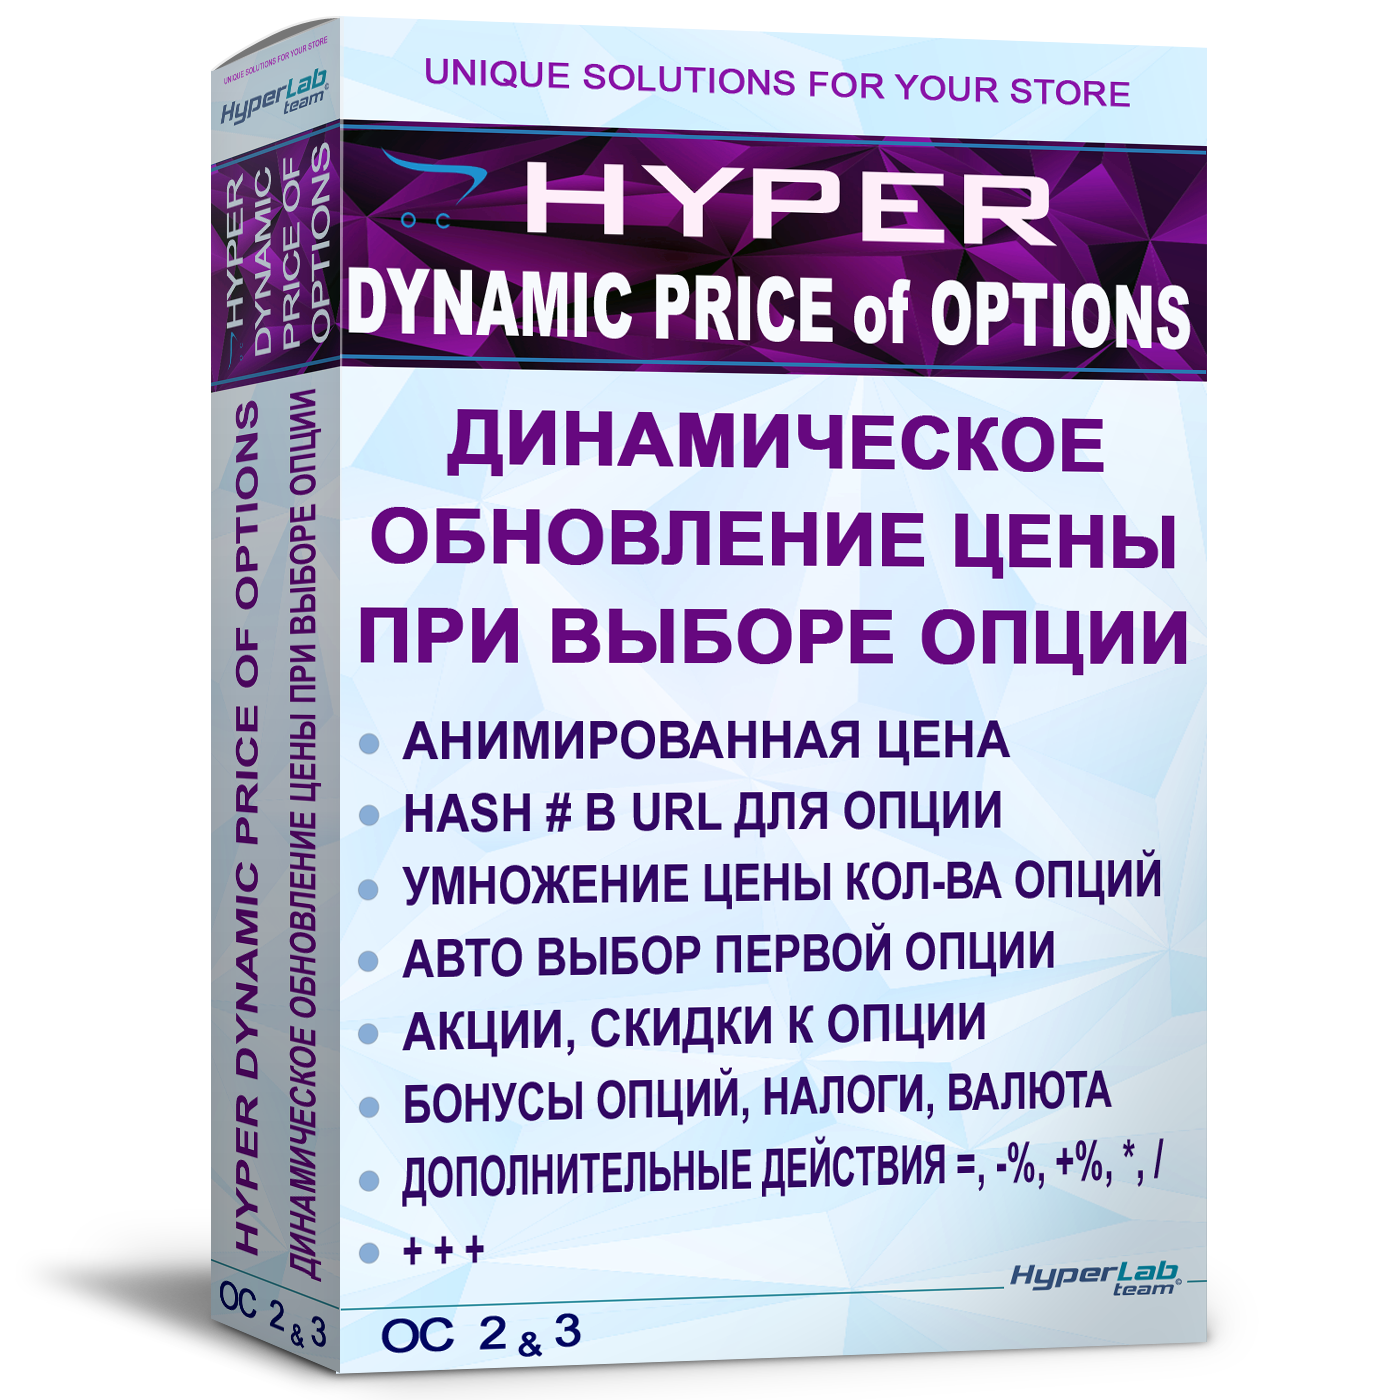 Обновление цены при выборе опции, без AJAX - HYPER Dynamic price of options